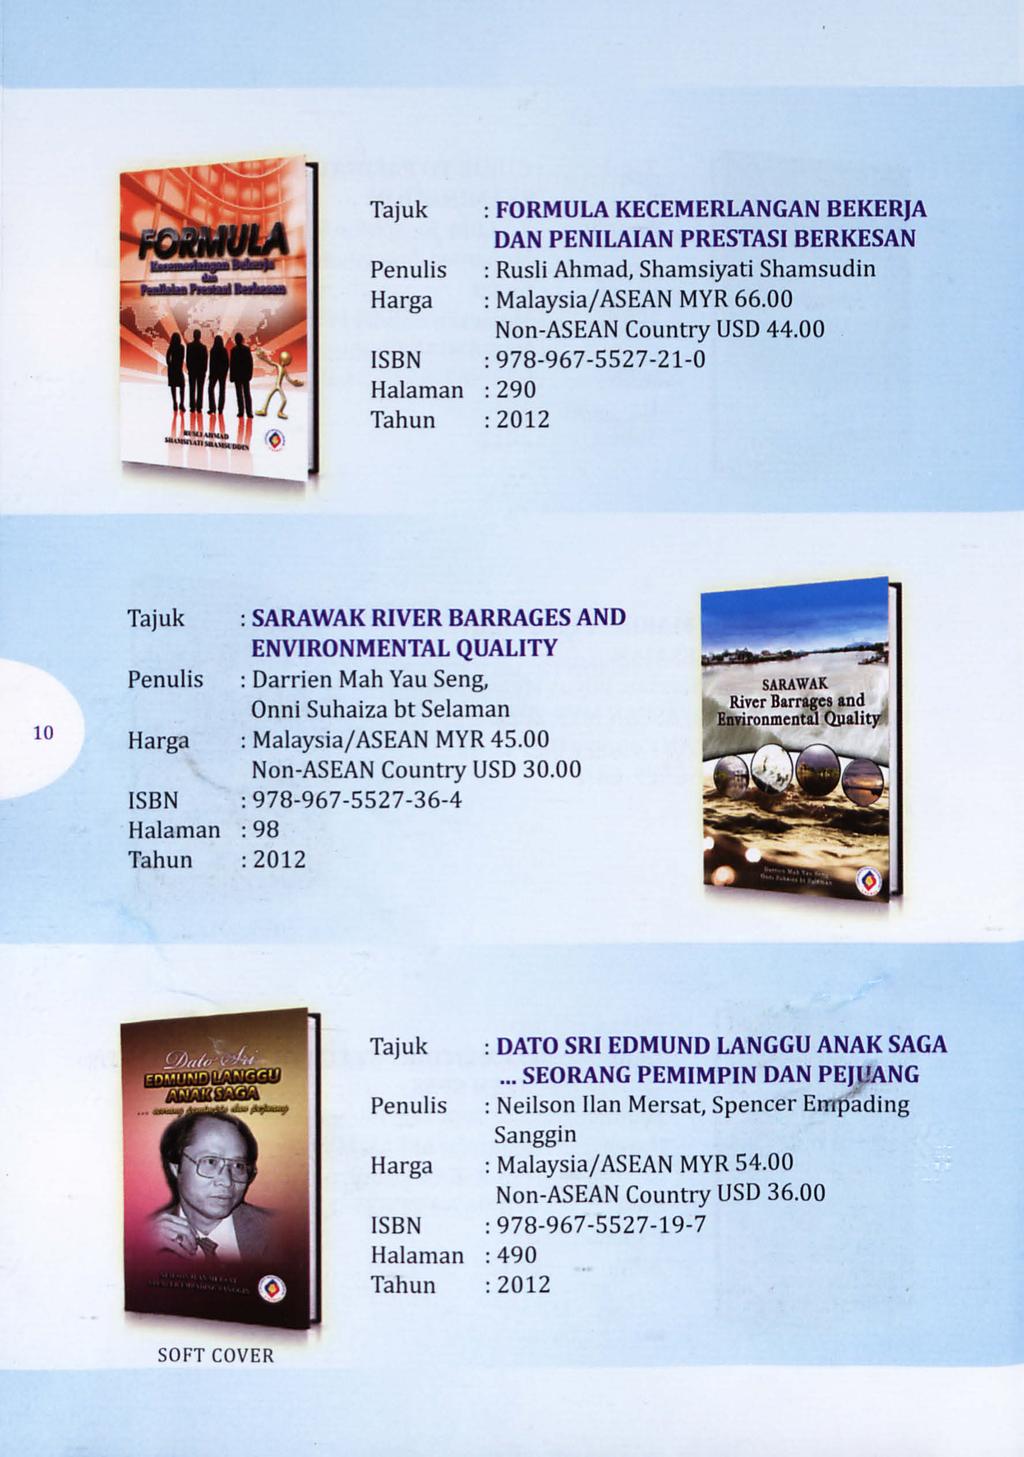 FORMULA KECEMERLANGAN BEKERJA DAN PENILAIAN PRESTASI BERKESAN : Rush Ahmad, Shamsiyati Shamsudin Harga : Malaysia/ASEAN MYR 66.00 Non-ASEAN Country USD 44.